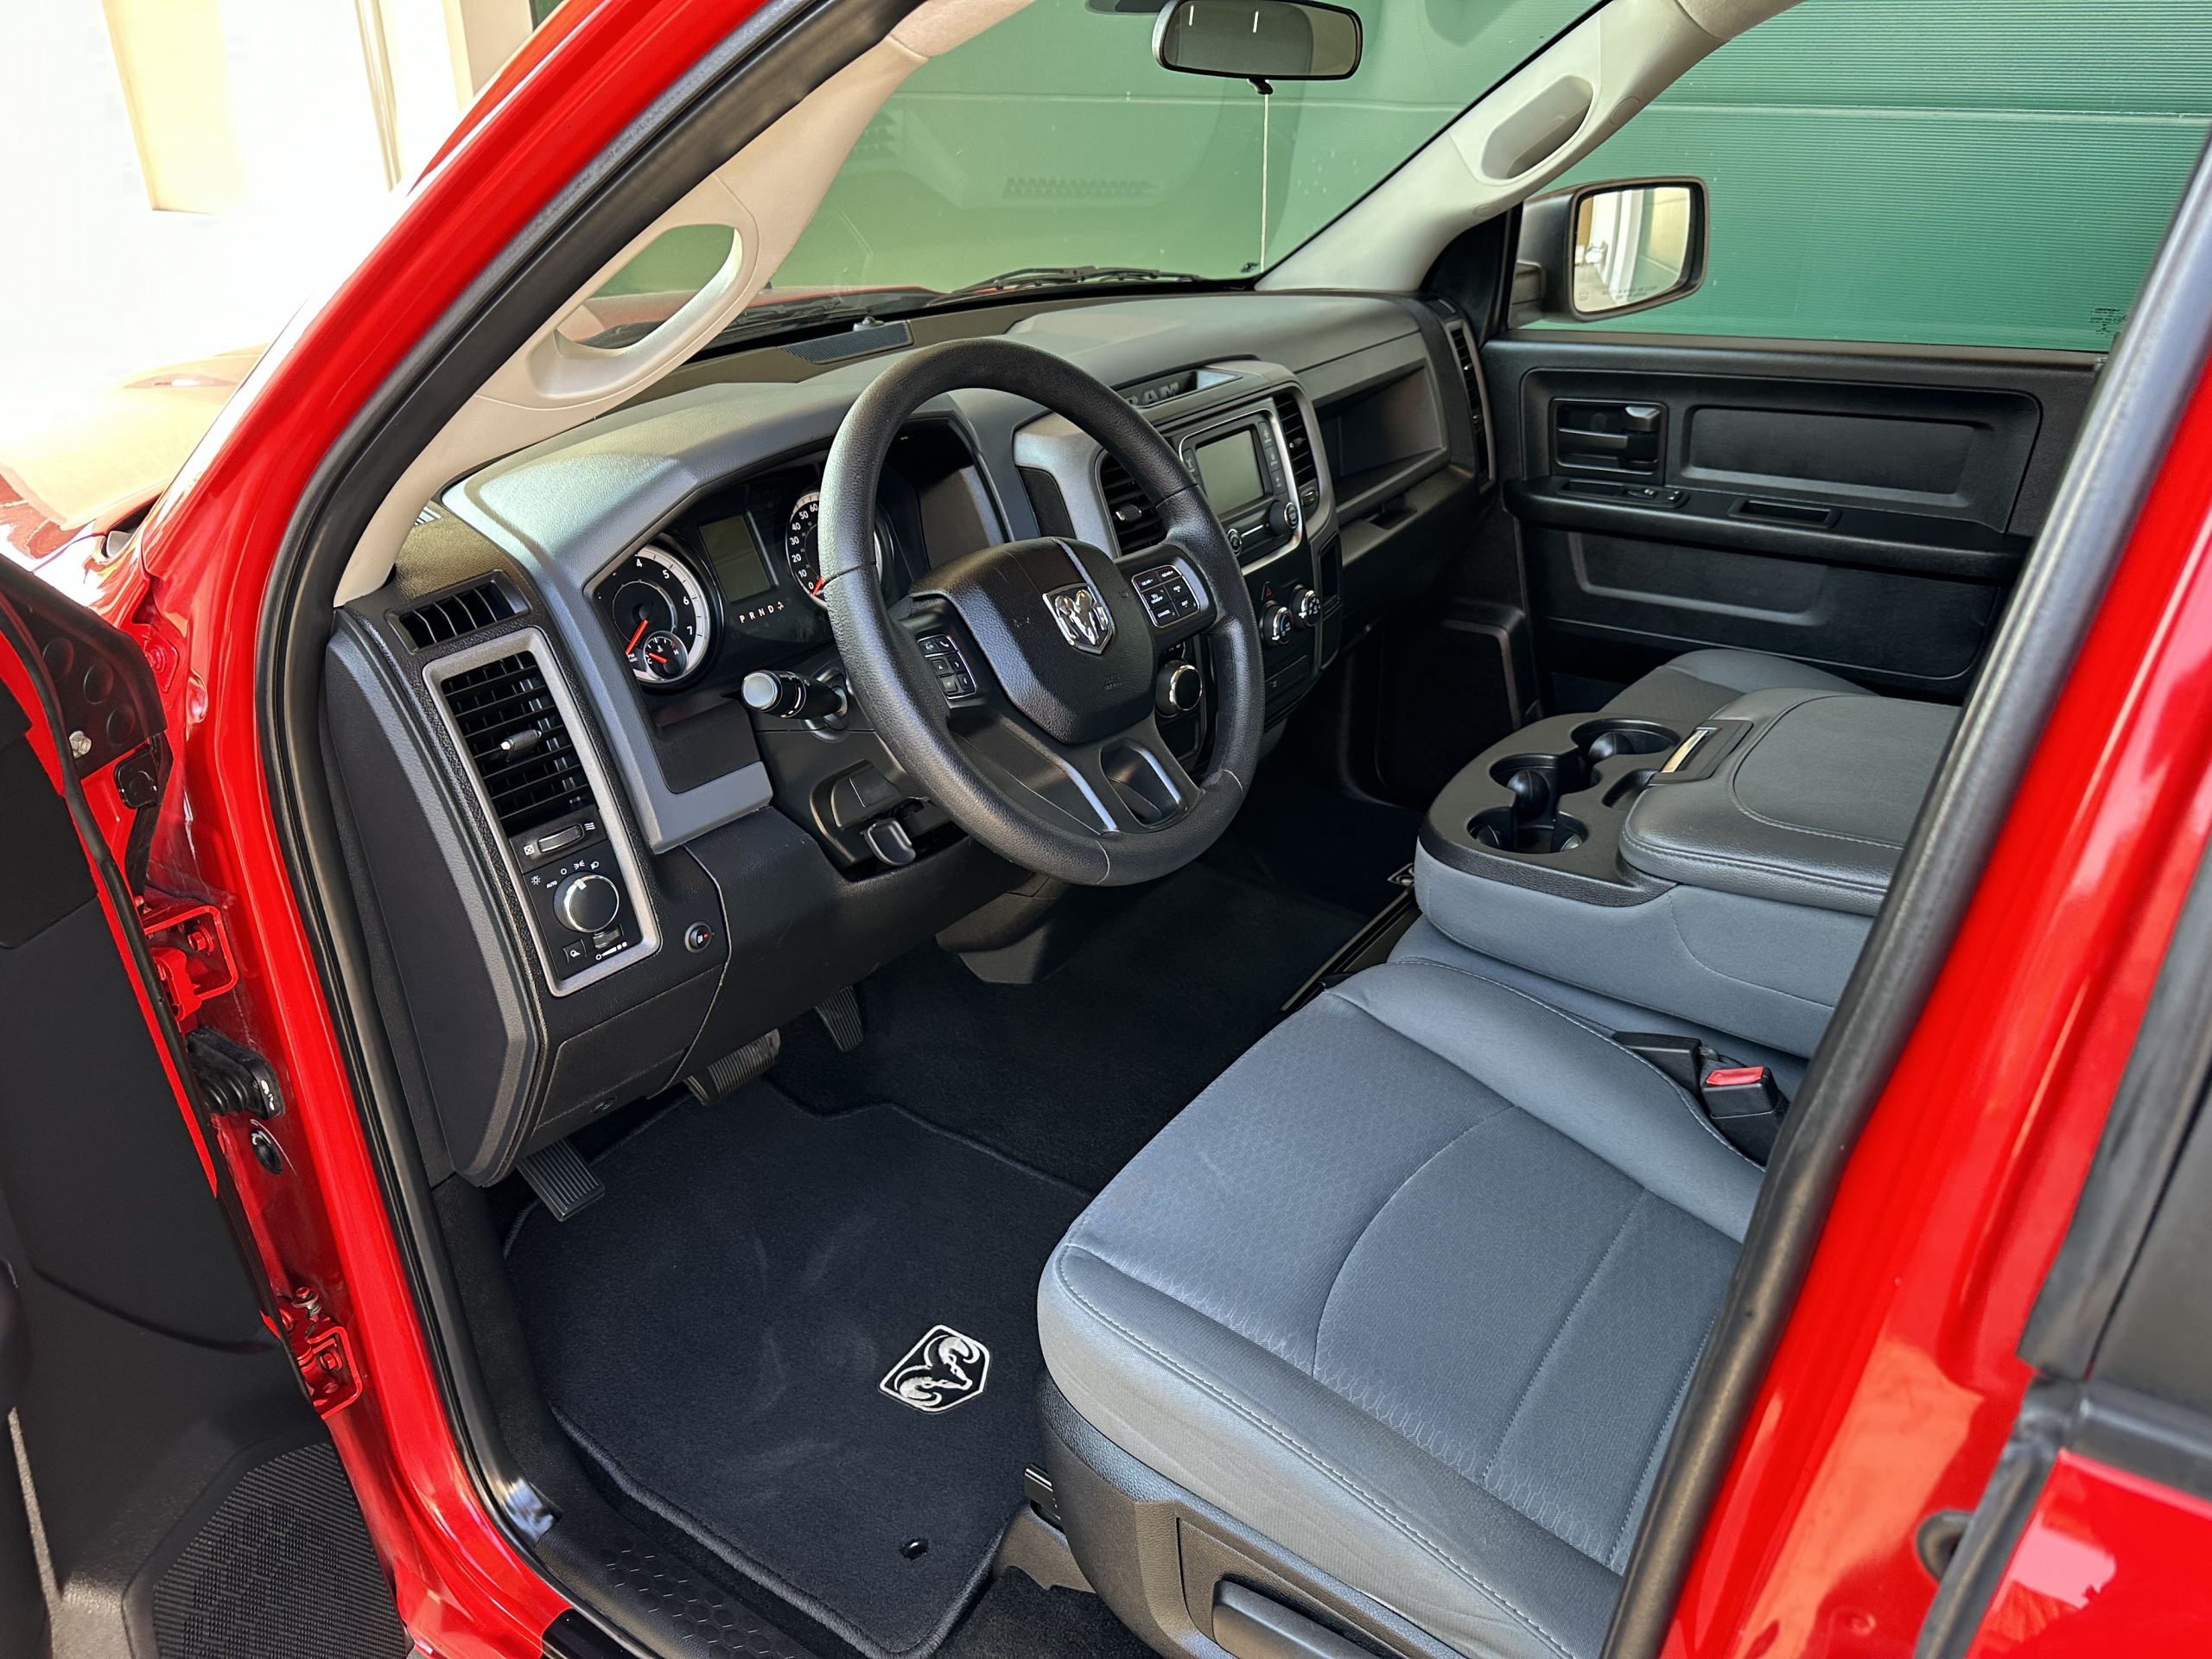 Dodge Ram 1500 Gen 4 usada de 2017 en venta, registro de la UE en Alemania